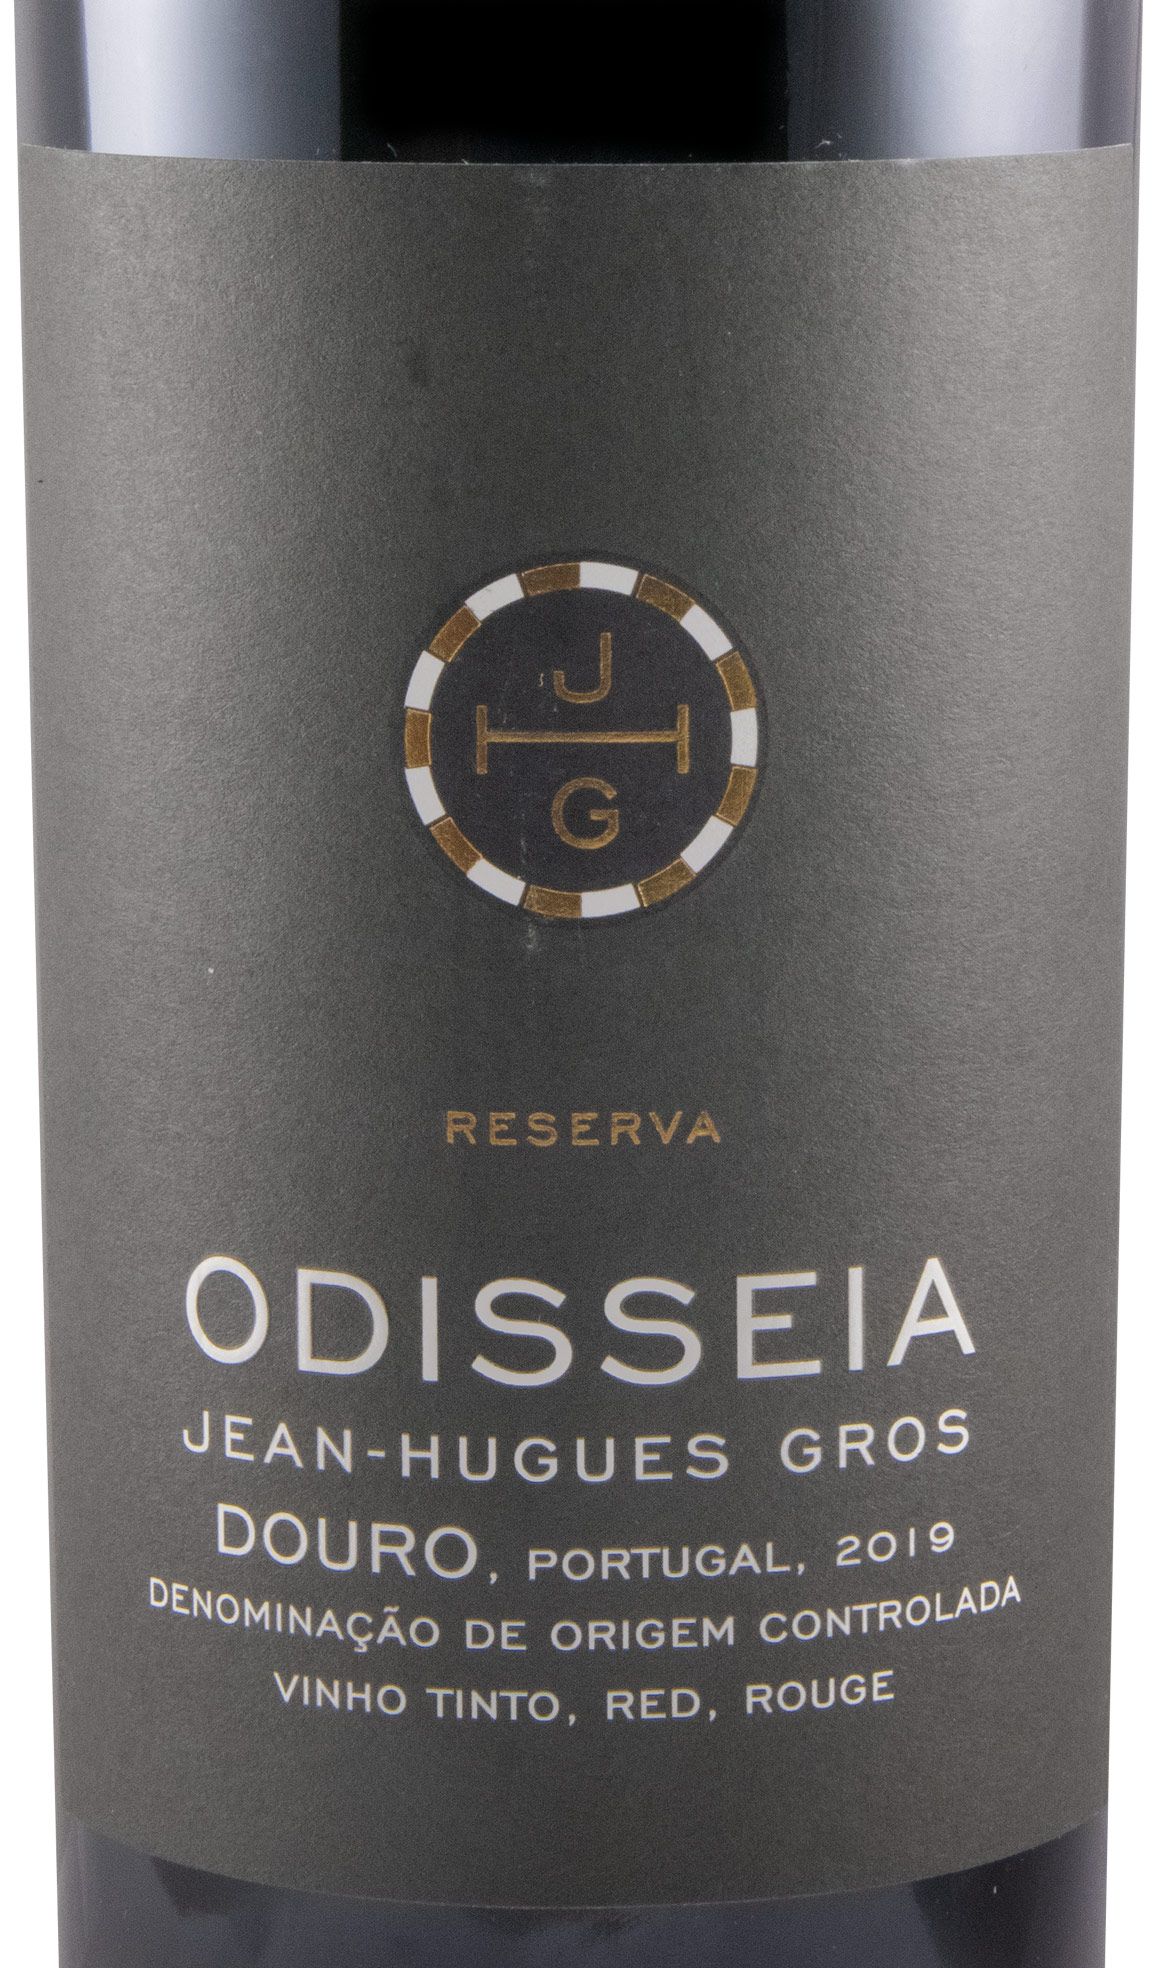 2019 Odisseia Reserva tinto